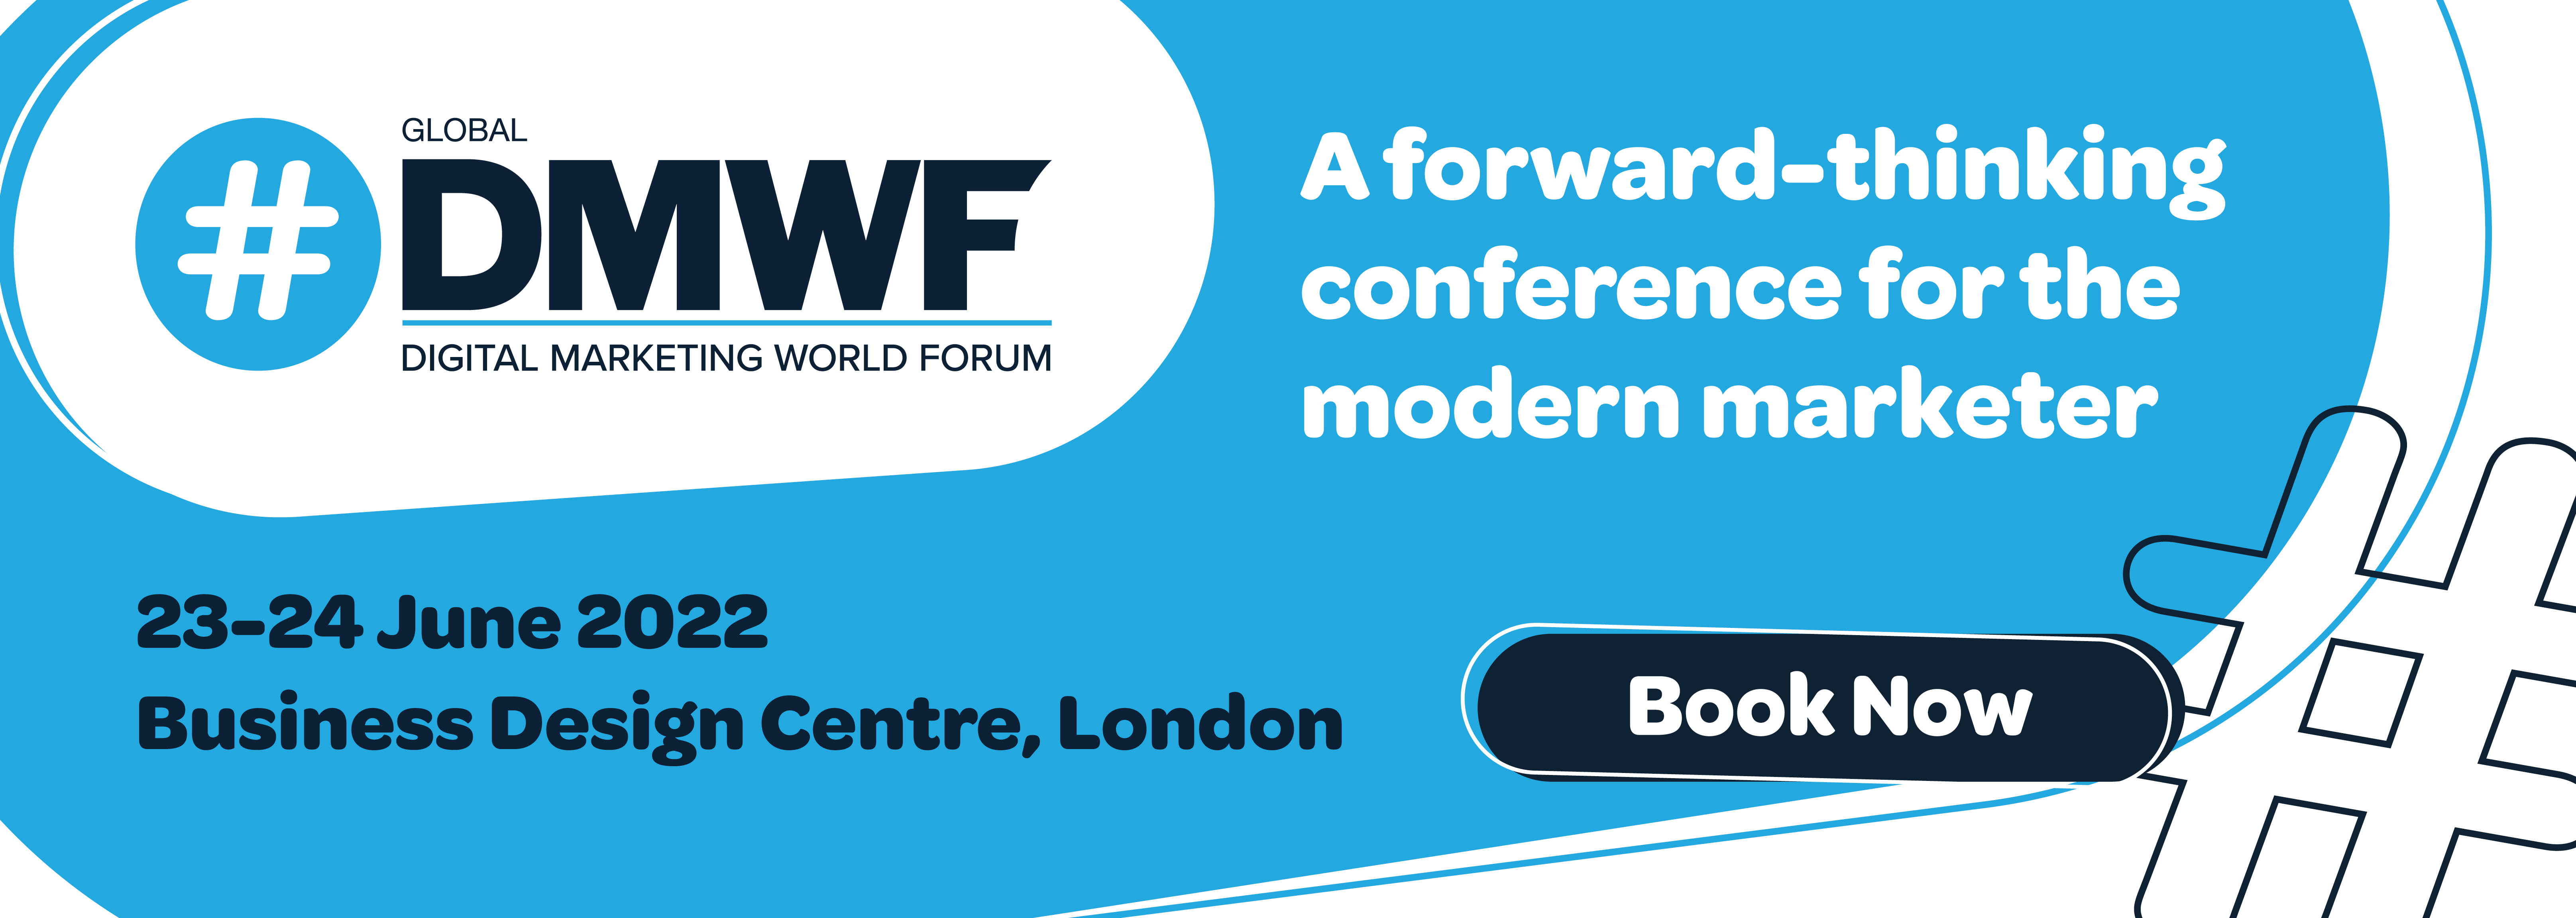 #DMWF Global 2023 (Digital Marketing World Forum), Angel, London, United Kingdom